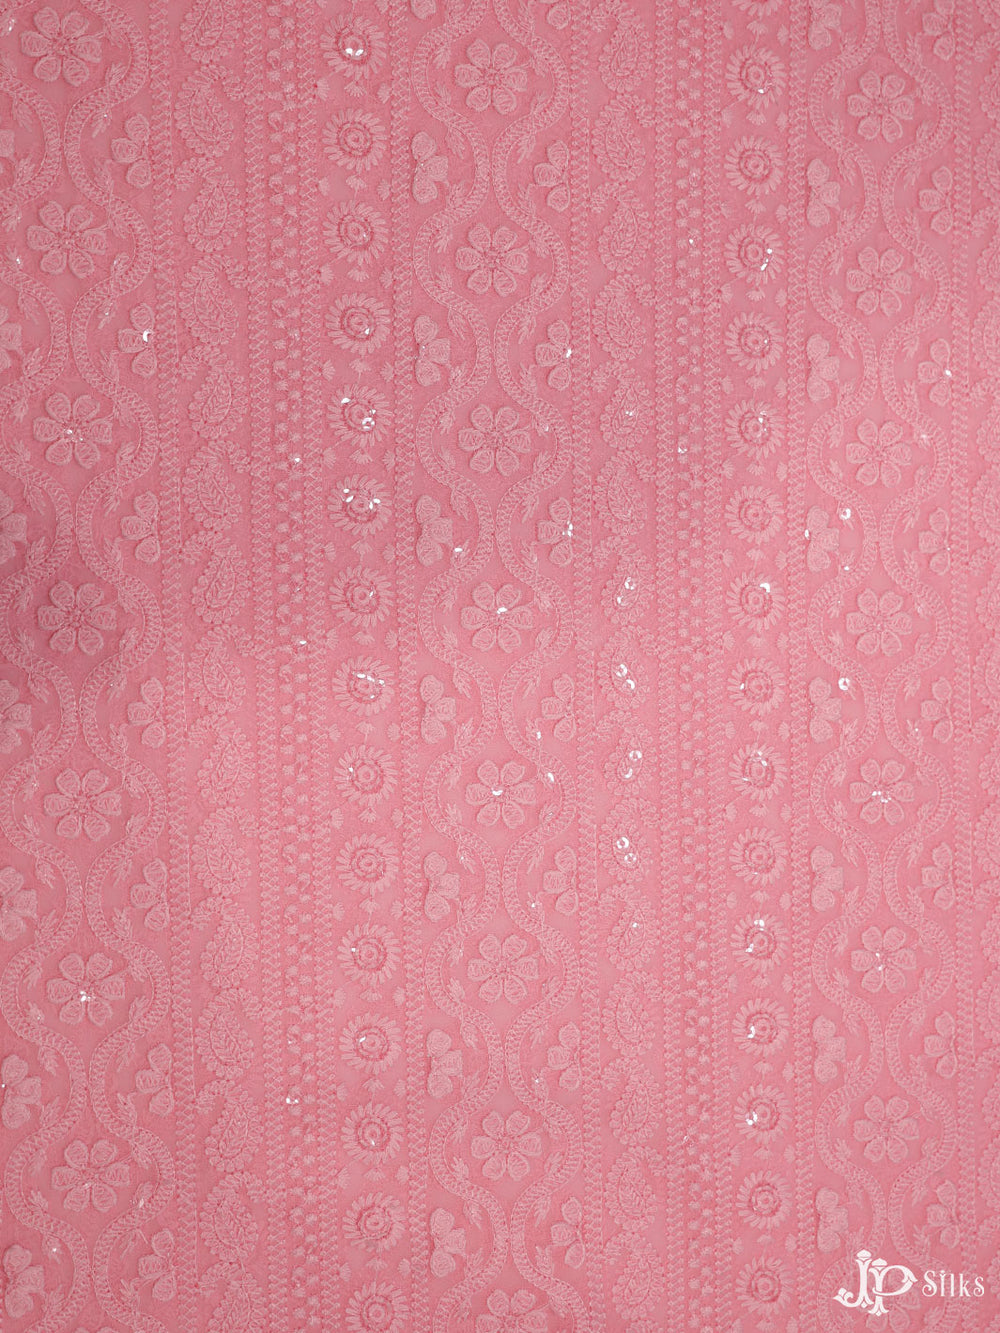 Pink Chiffon Chikankari Fabric - C3121 - View 1